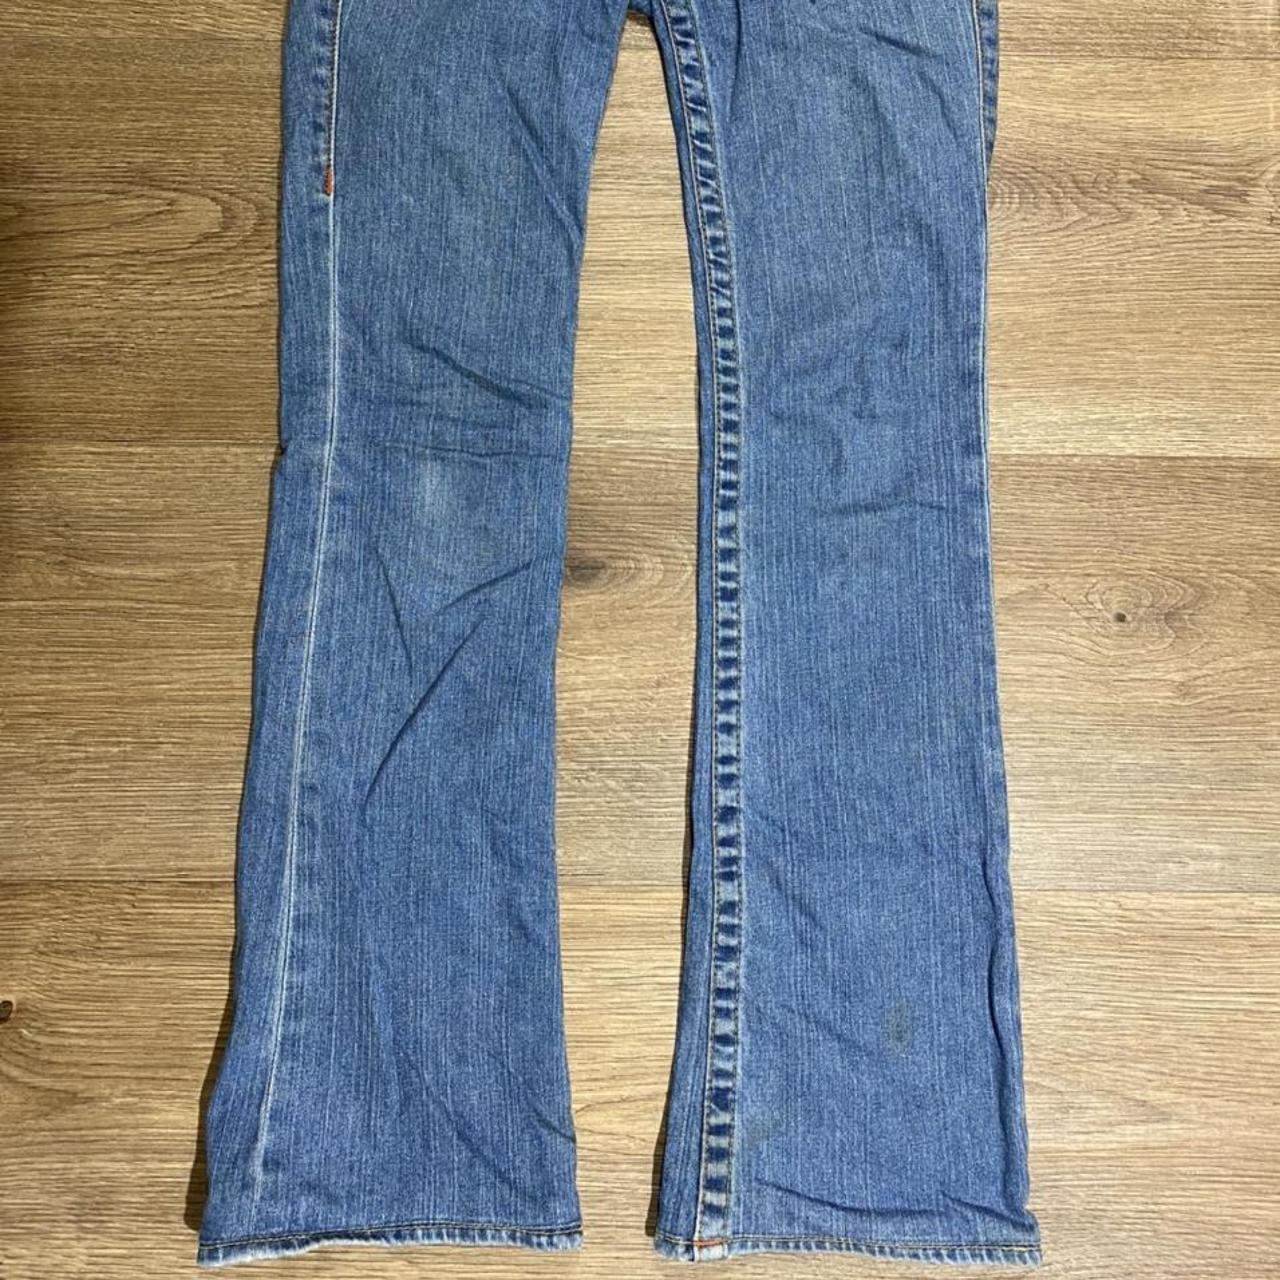 True Religion low rise jeans Coolest vintage jeans... - Depop